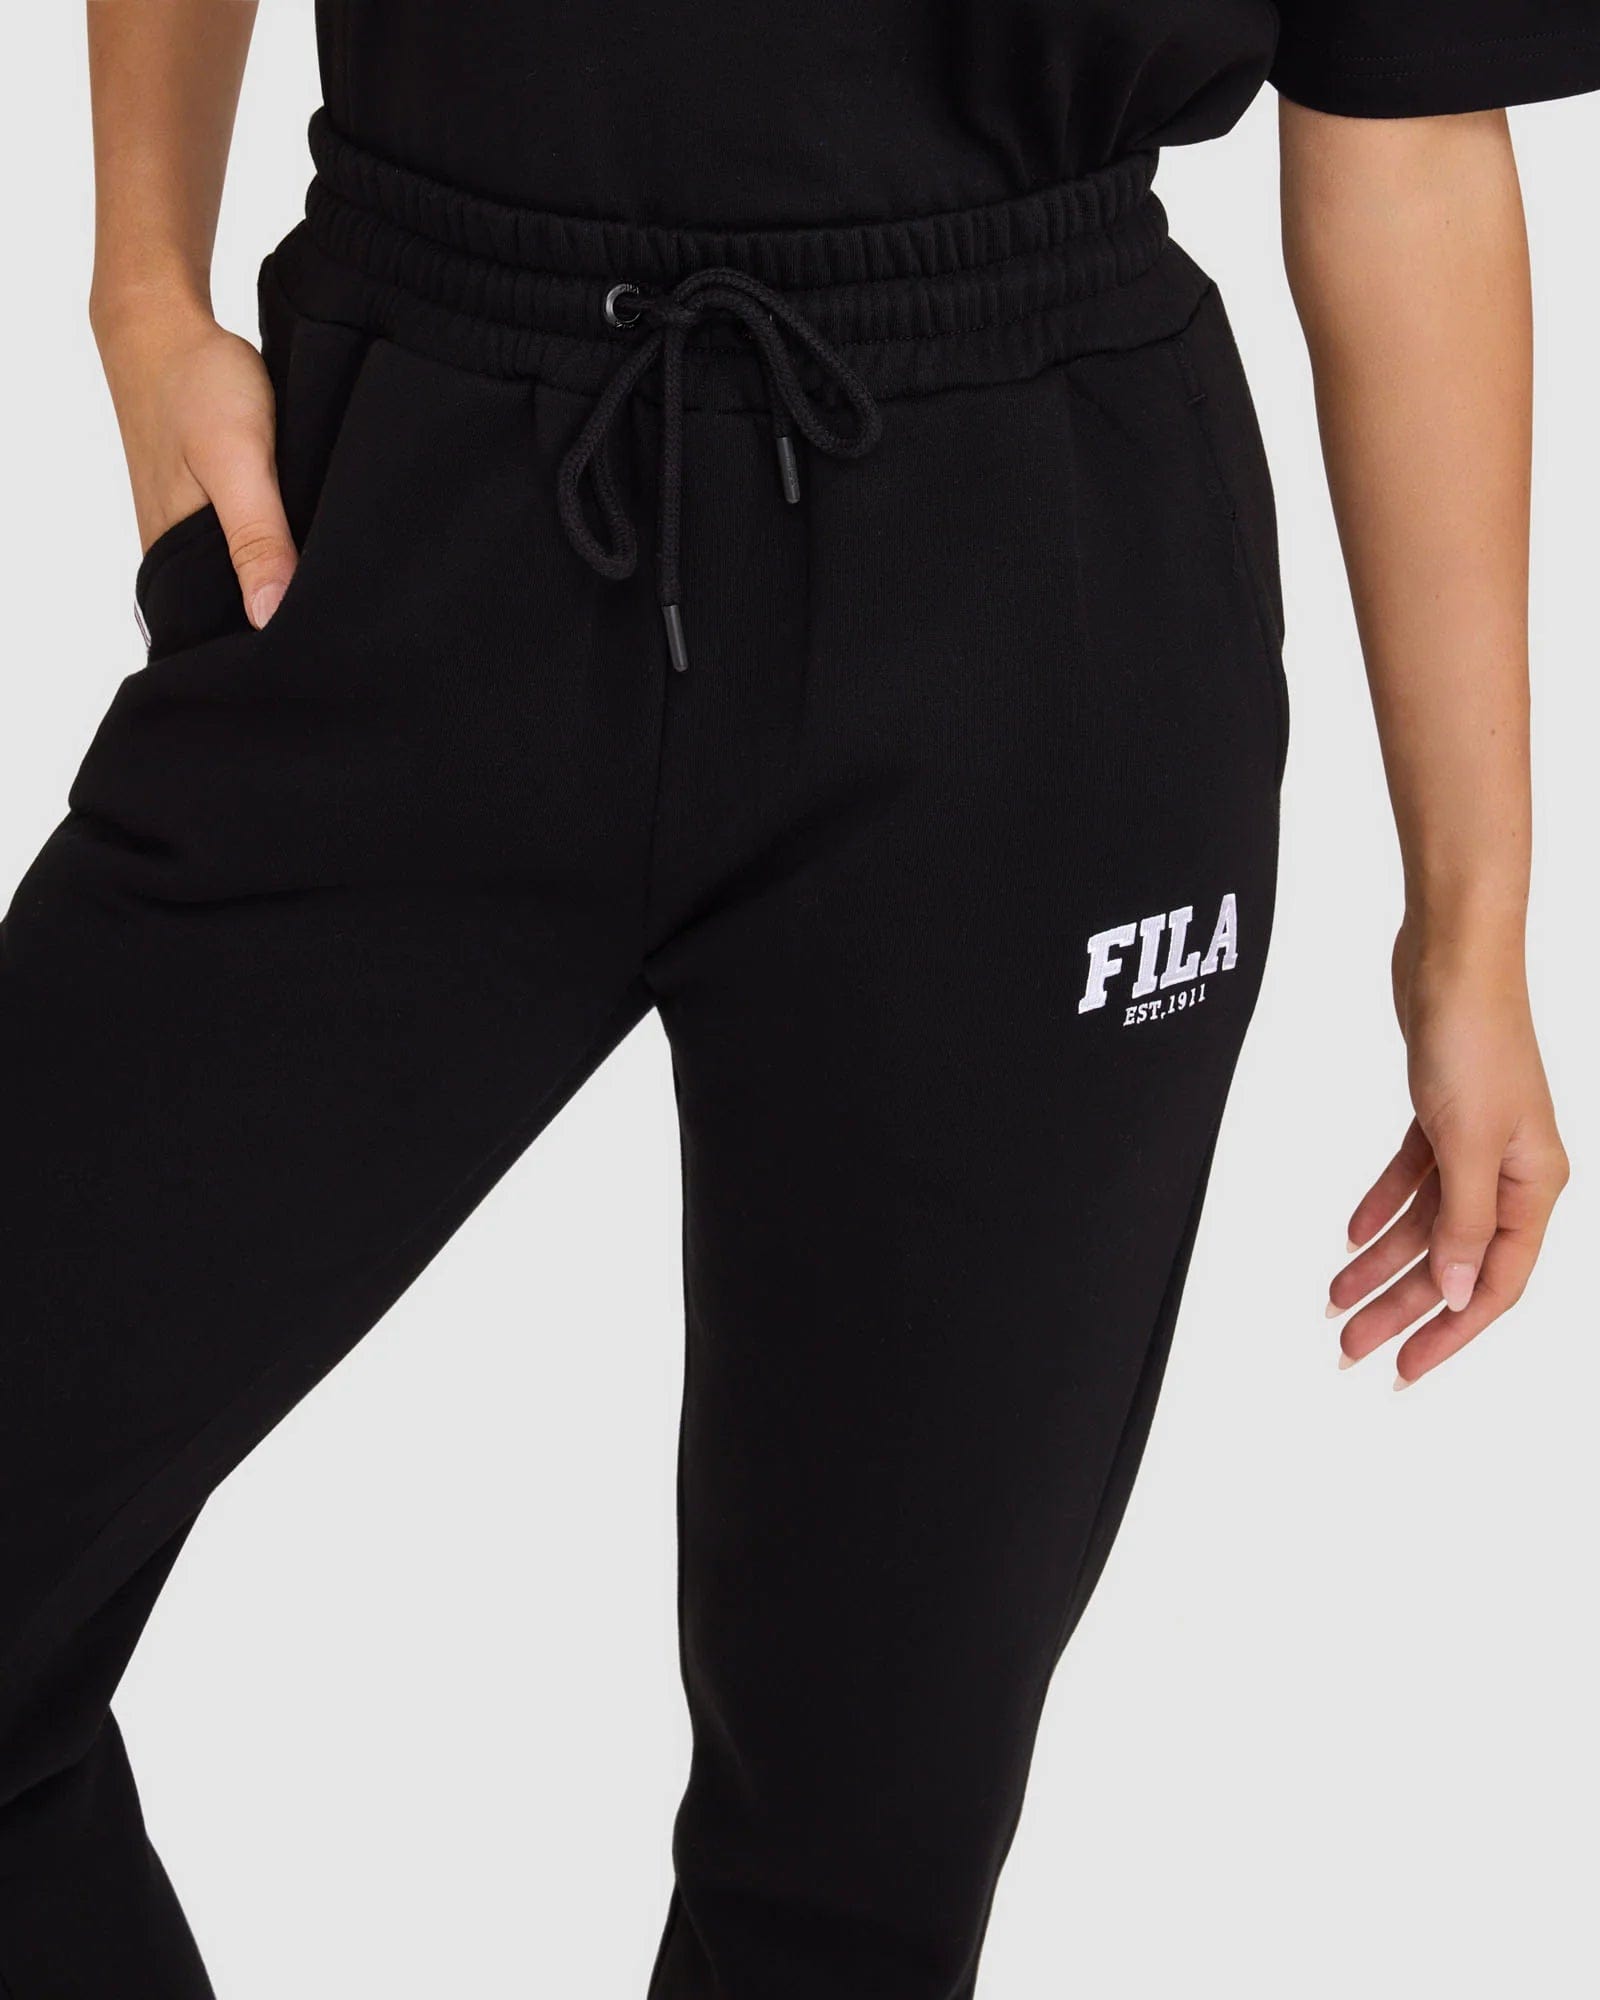 Fila Richelle Pants Women's Black White Daily Casualwear